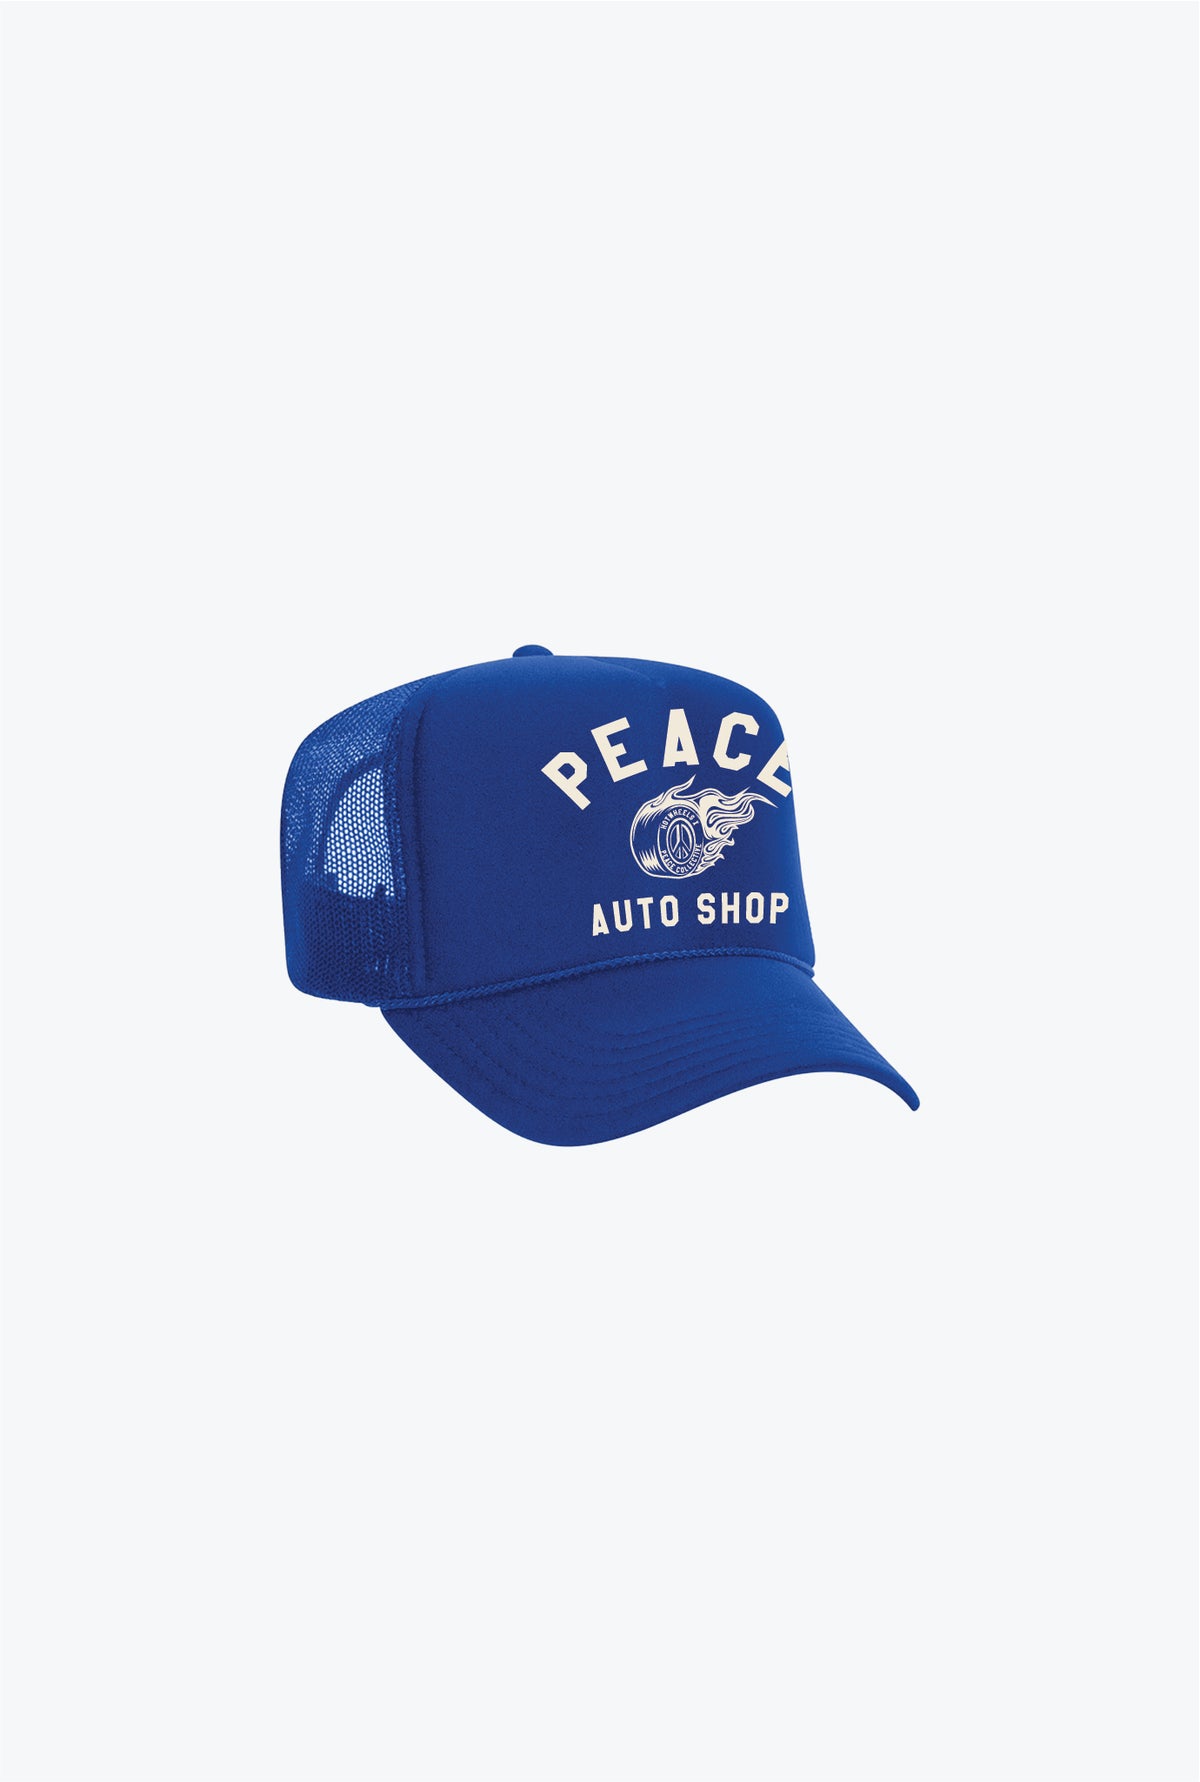 Peace Auto Shop Trucker Hat - Royal